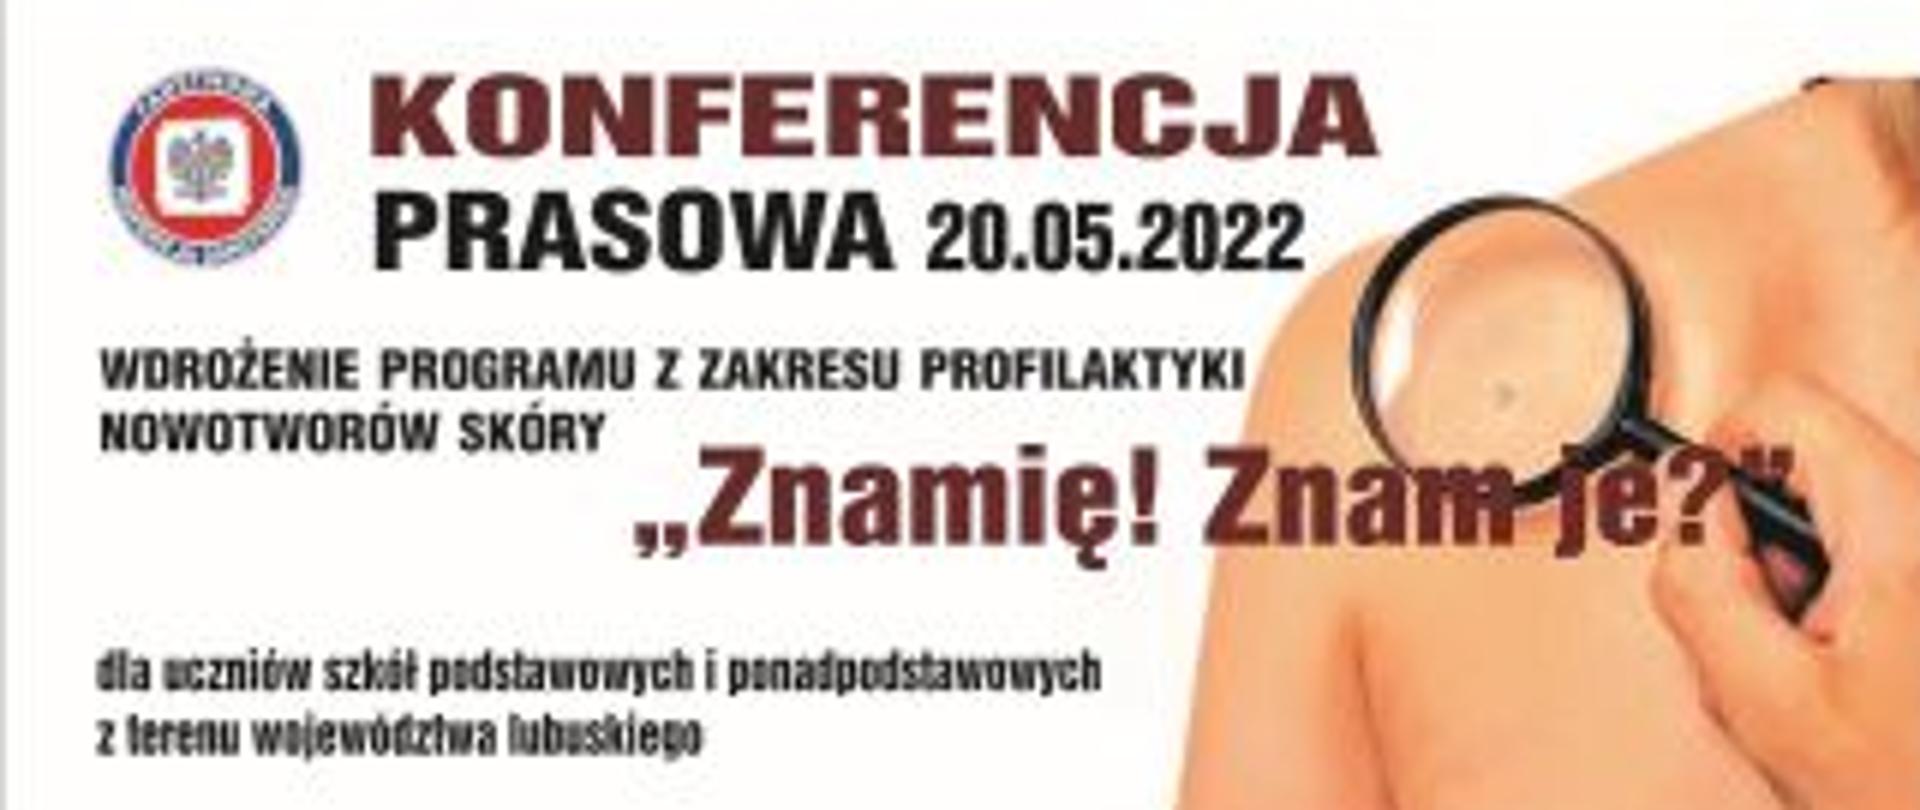 baner informujący o konferencji prasowej dotyczącej programu edukacyjnego "Znamię! Znam je?